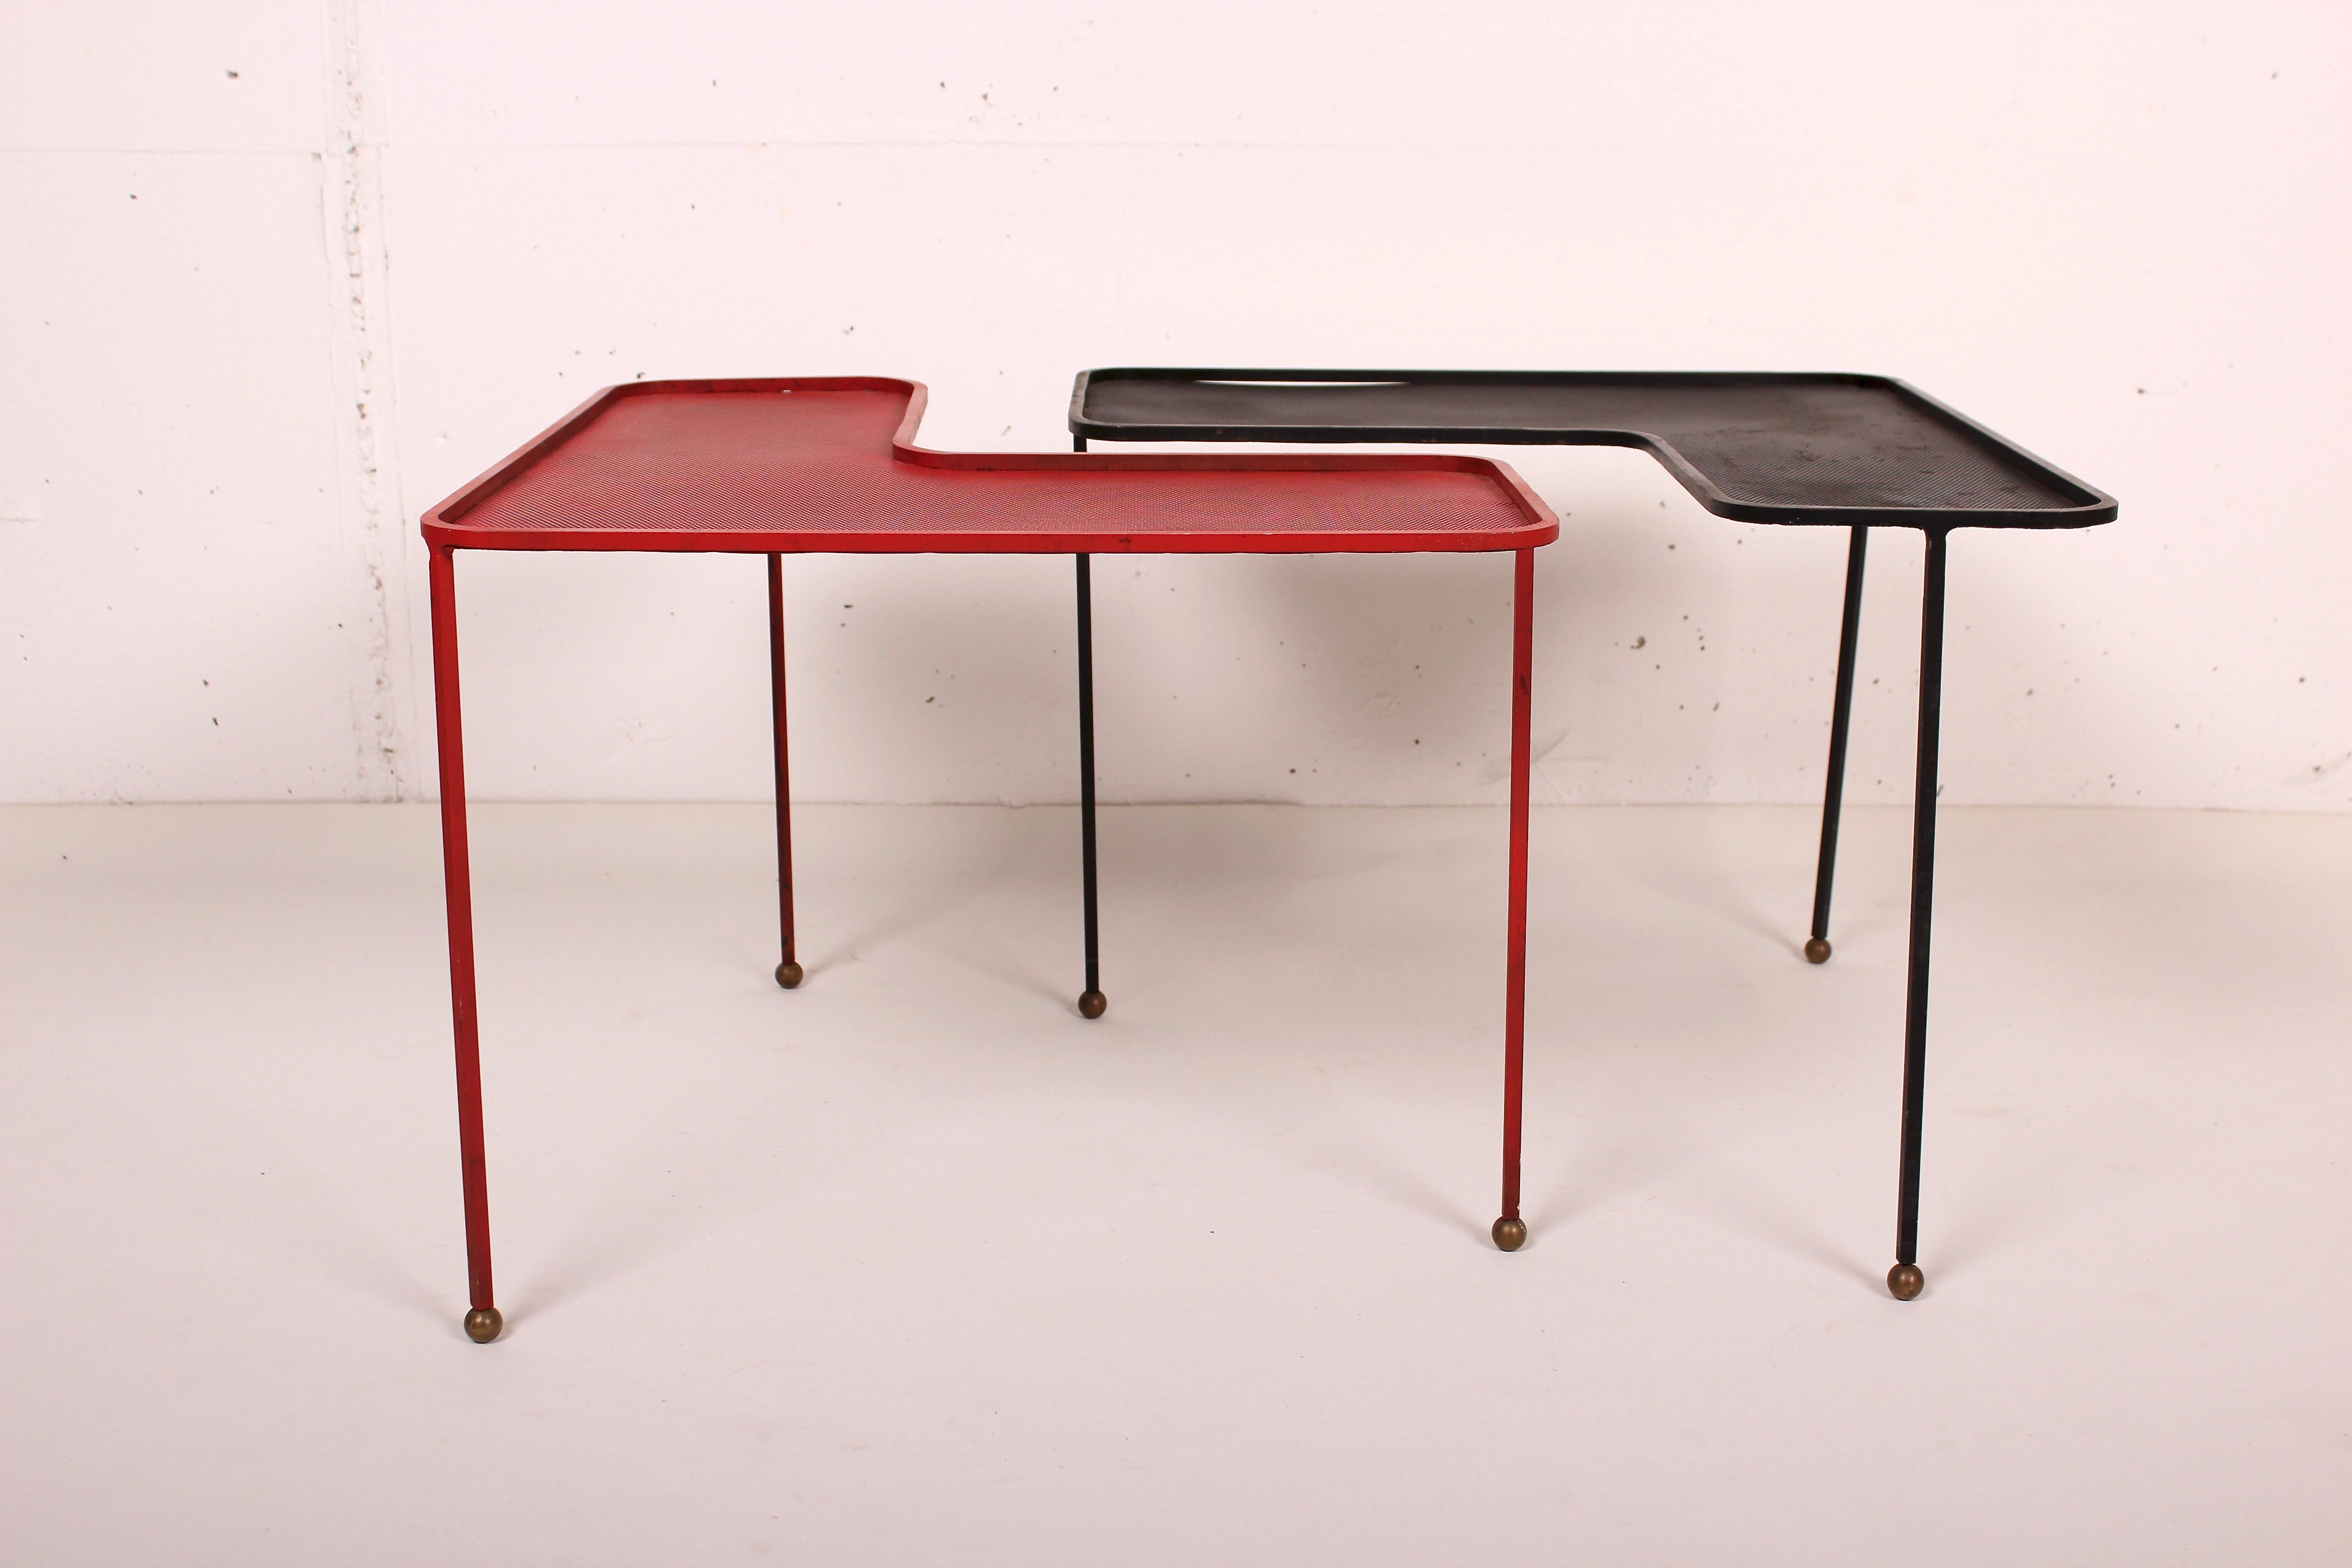 Paar Domino Couchtische von Mathieu Matégot, schwarz und rot lackiertes, perforiertes Metall und Messing.